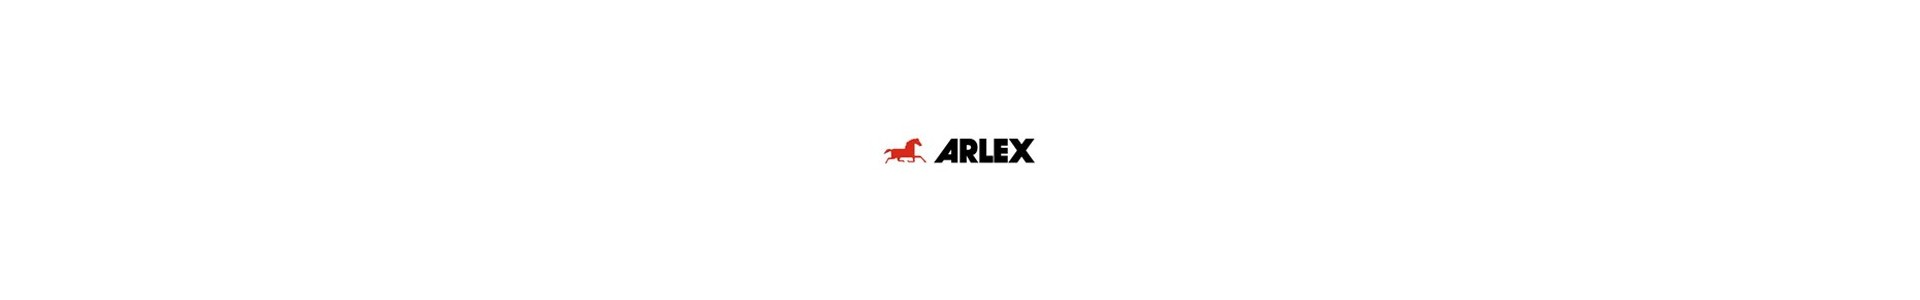 Arlex